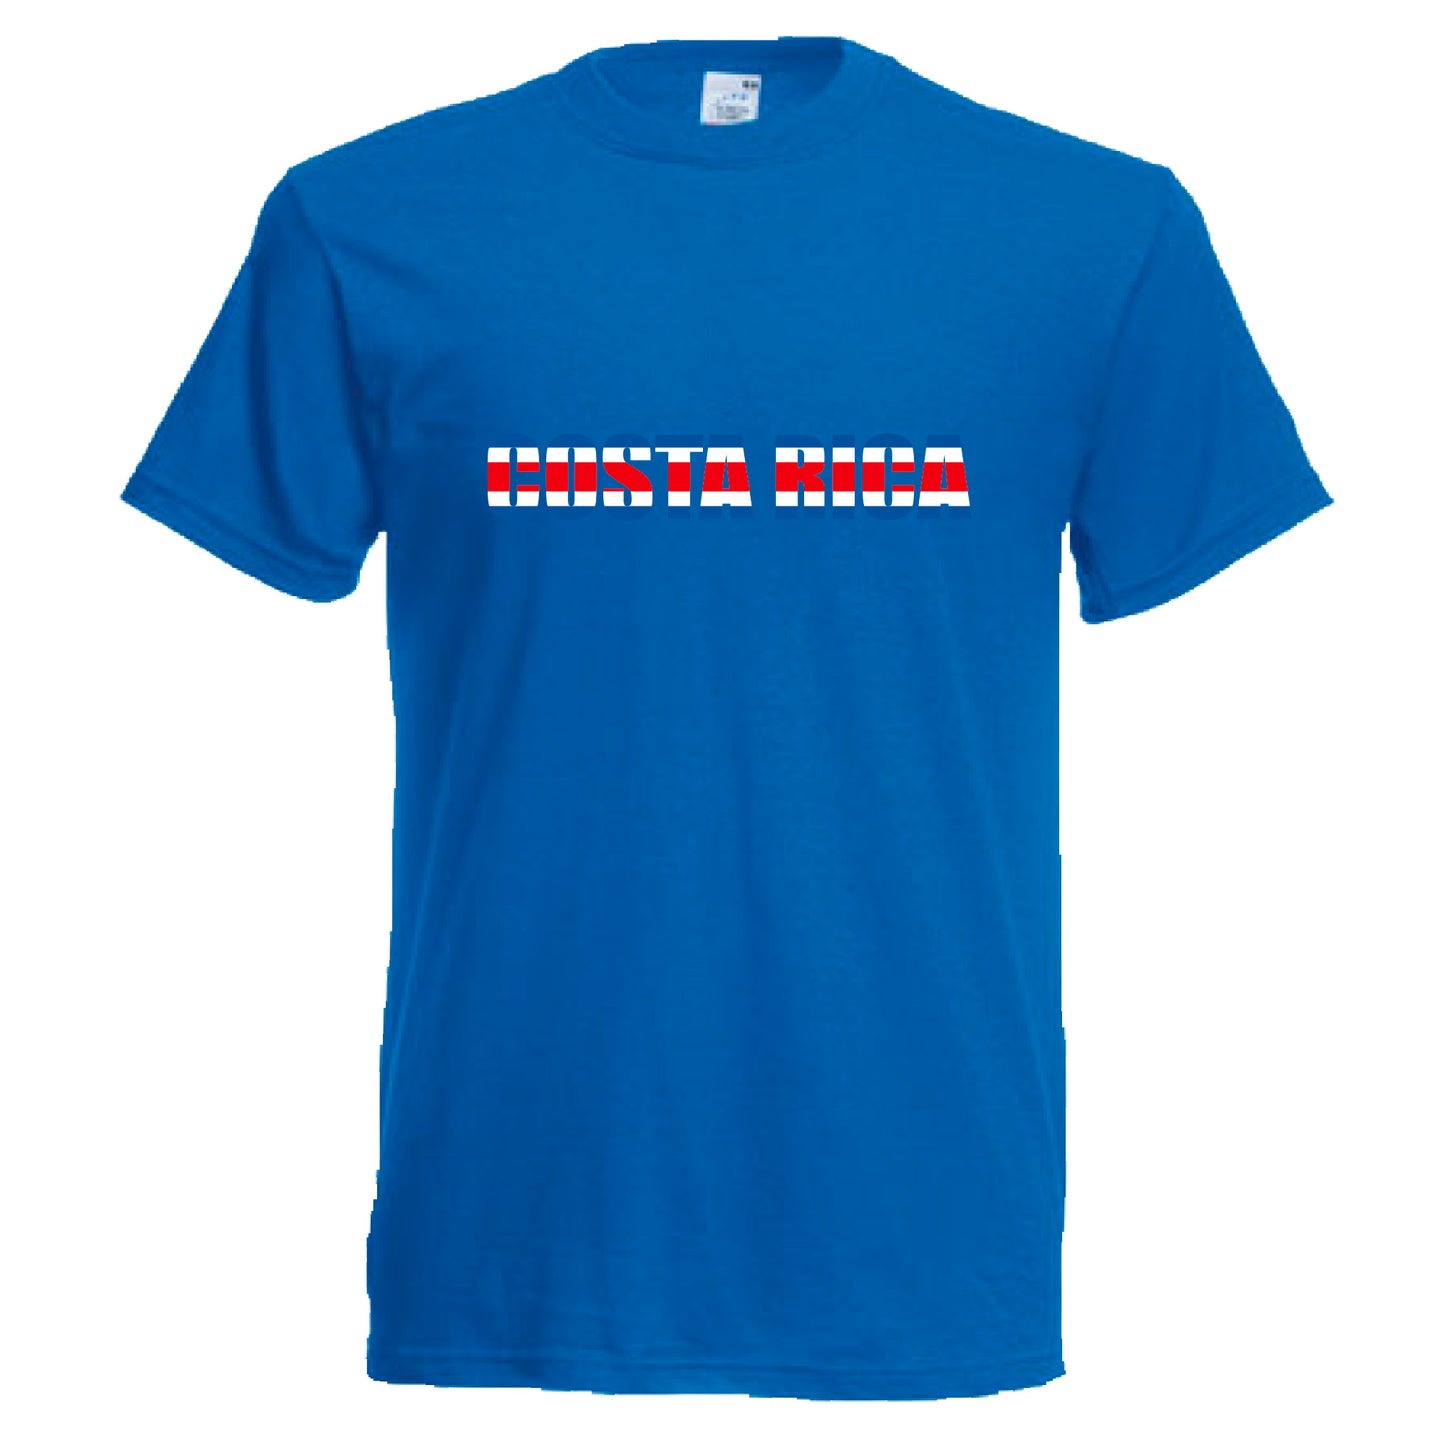 INDIGOS UG - T-Shirt Herren - Costa Rica - Schriftzug - Fussball